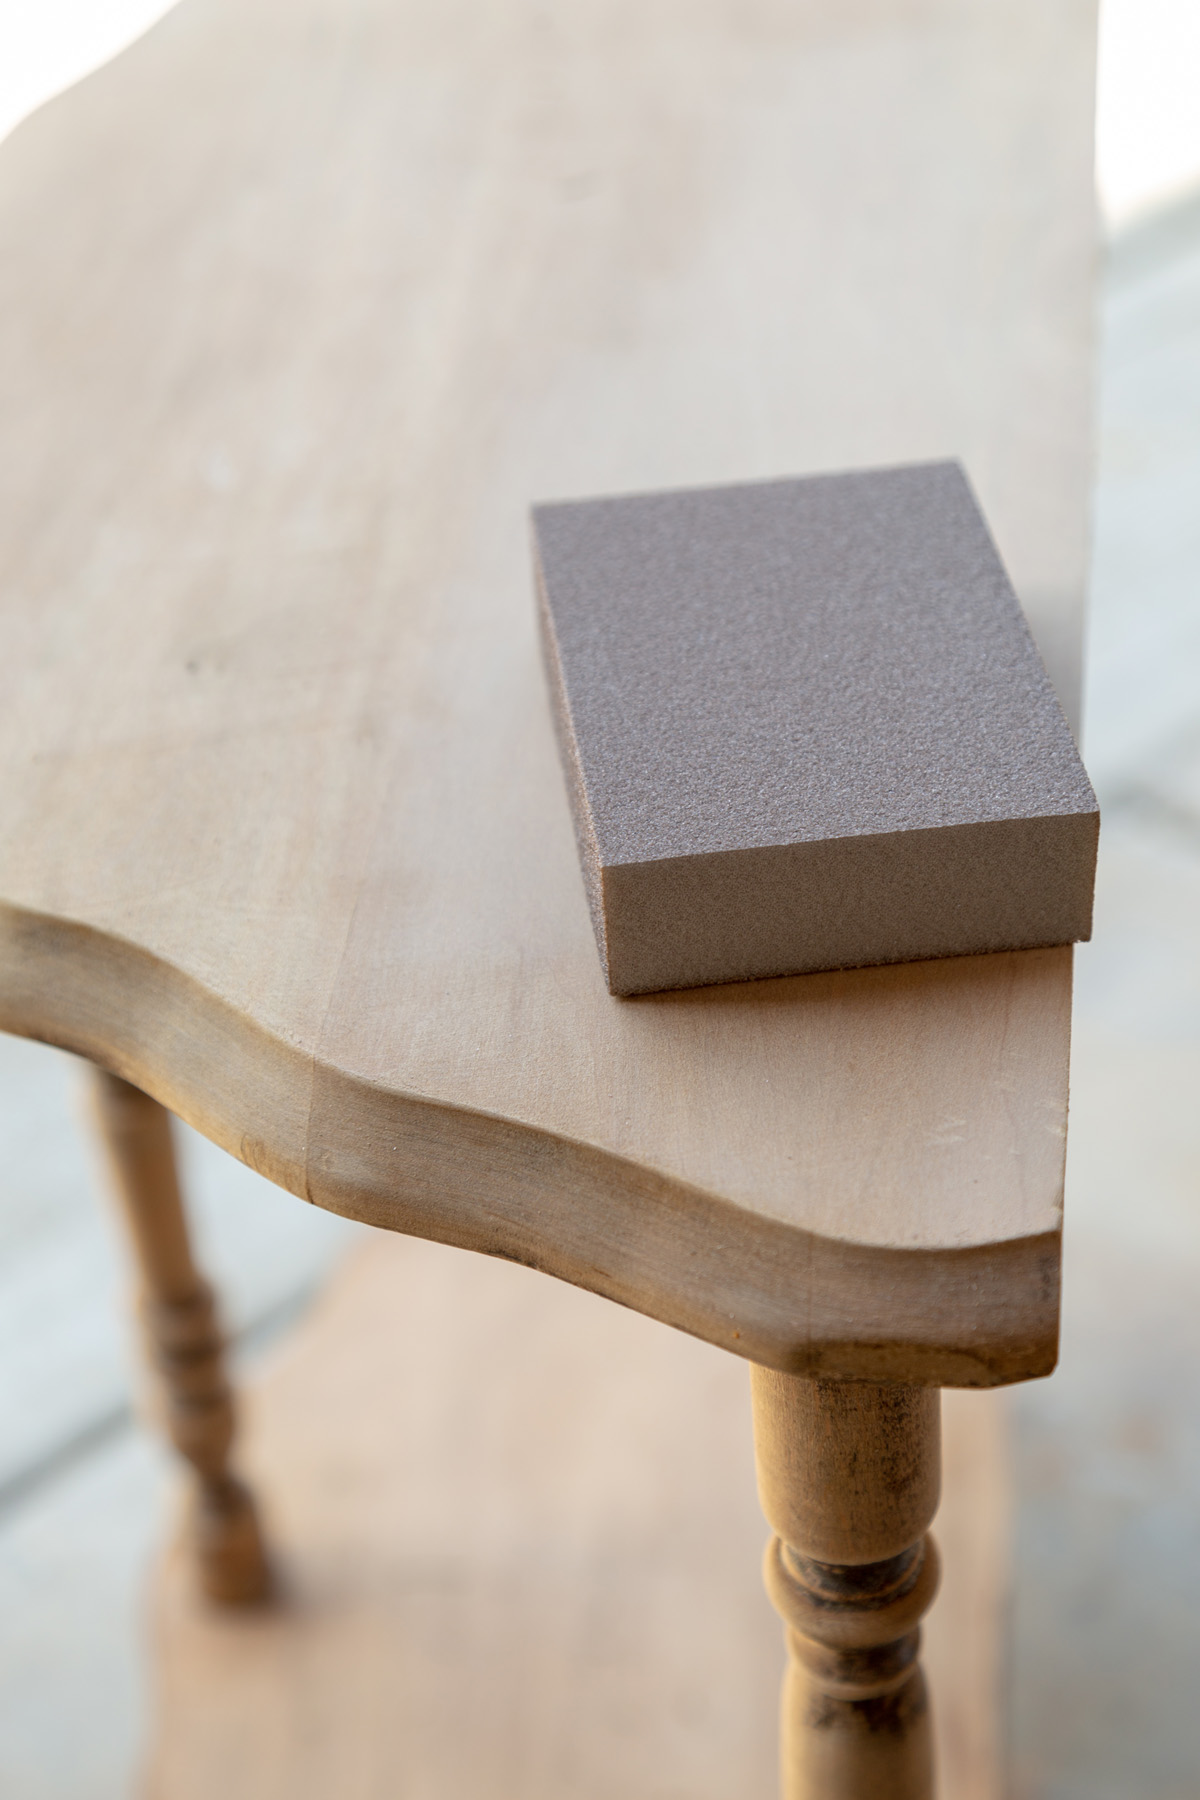 sanding block on wood table